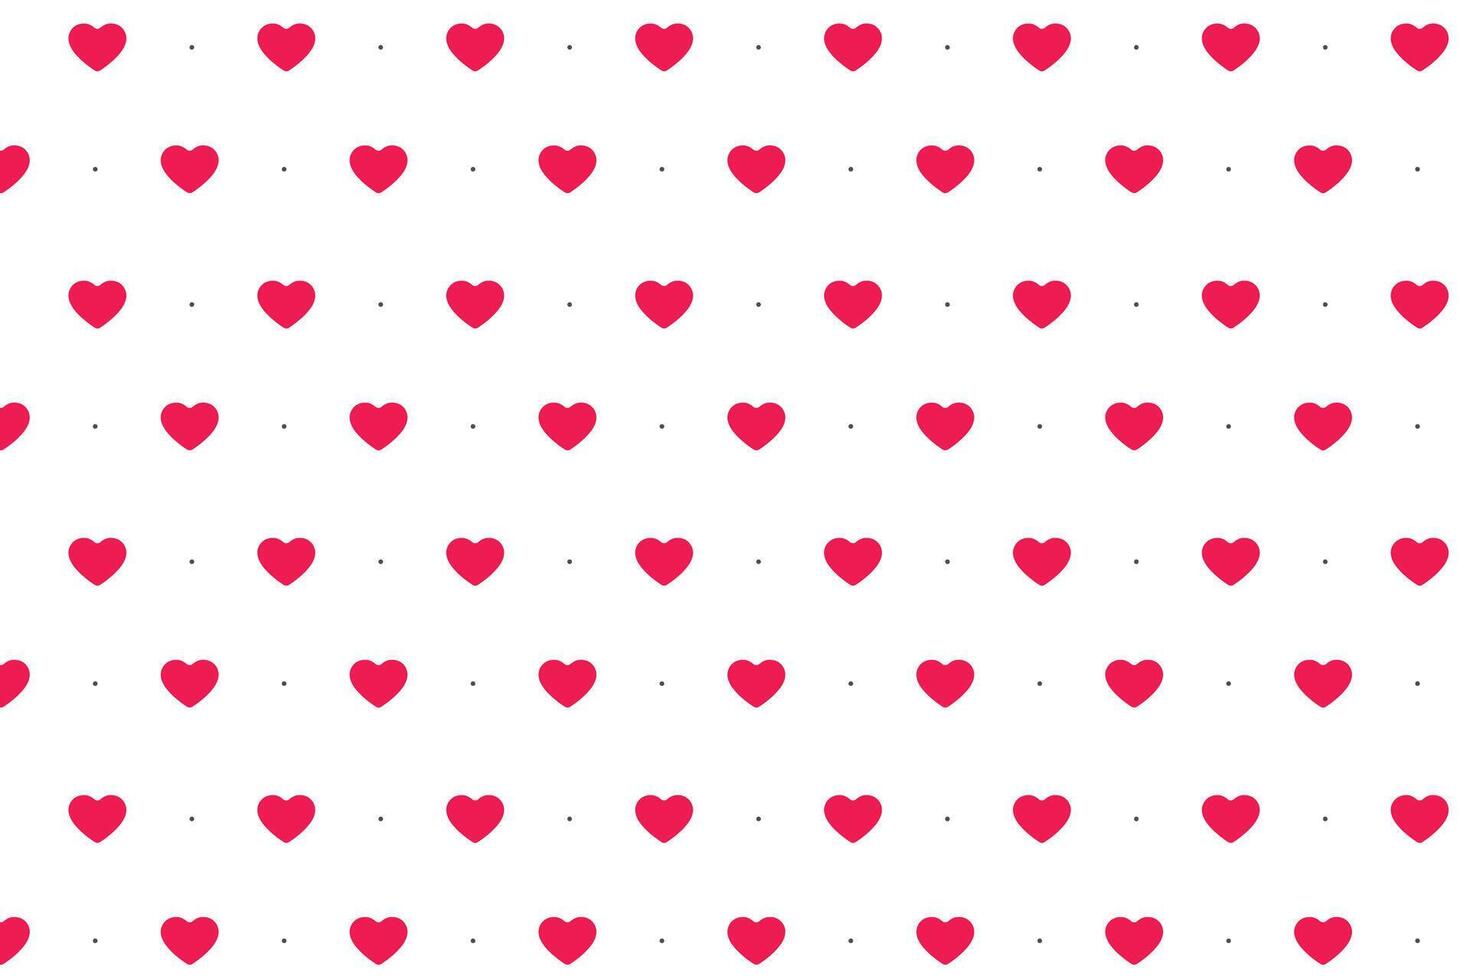 minimaal en schattig liefde romantisch hart patroon behang ontwerp vector